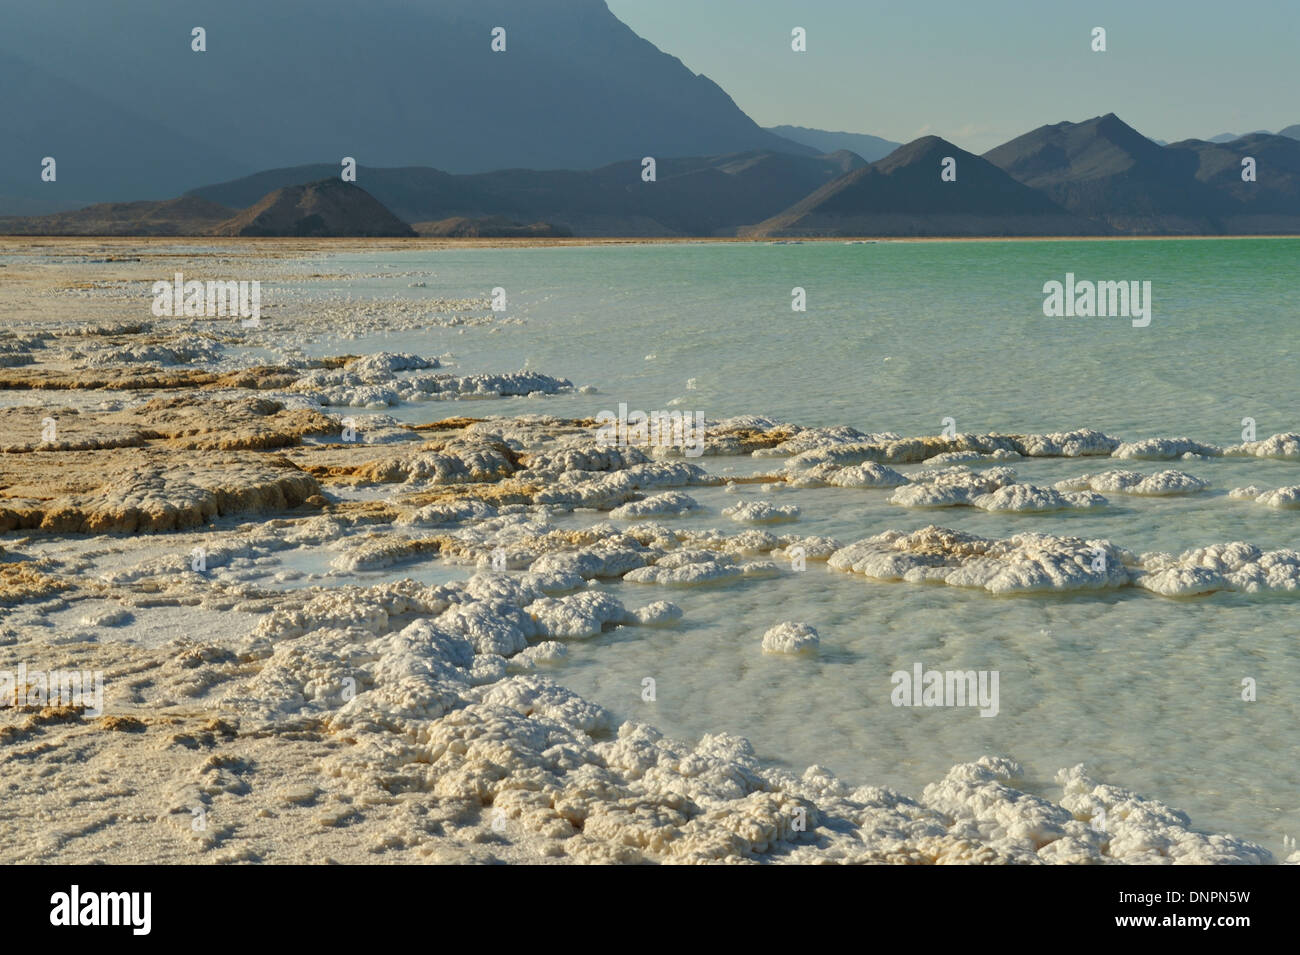 Placas de sal secada por el sol a orillas del lago Assal, Djibouti Foto de stock